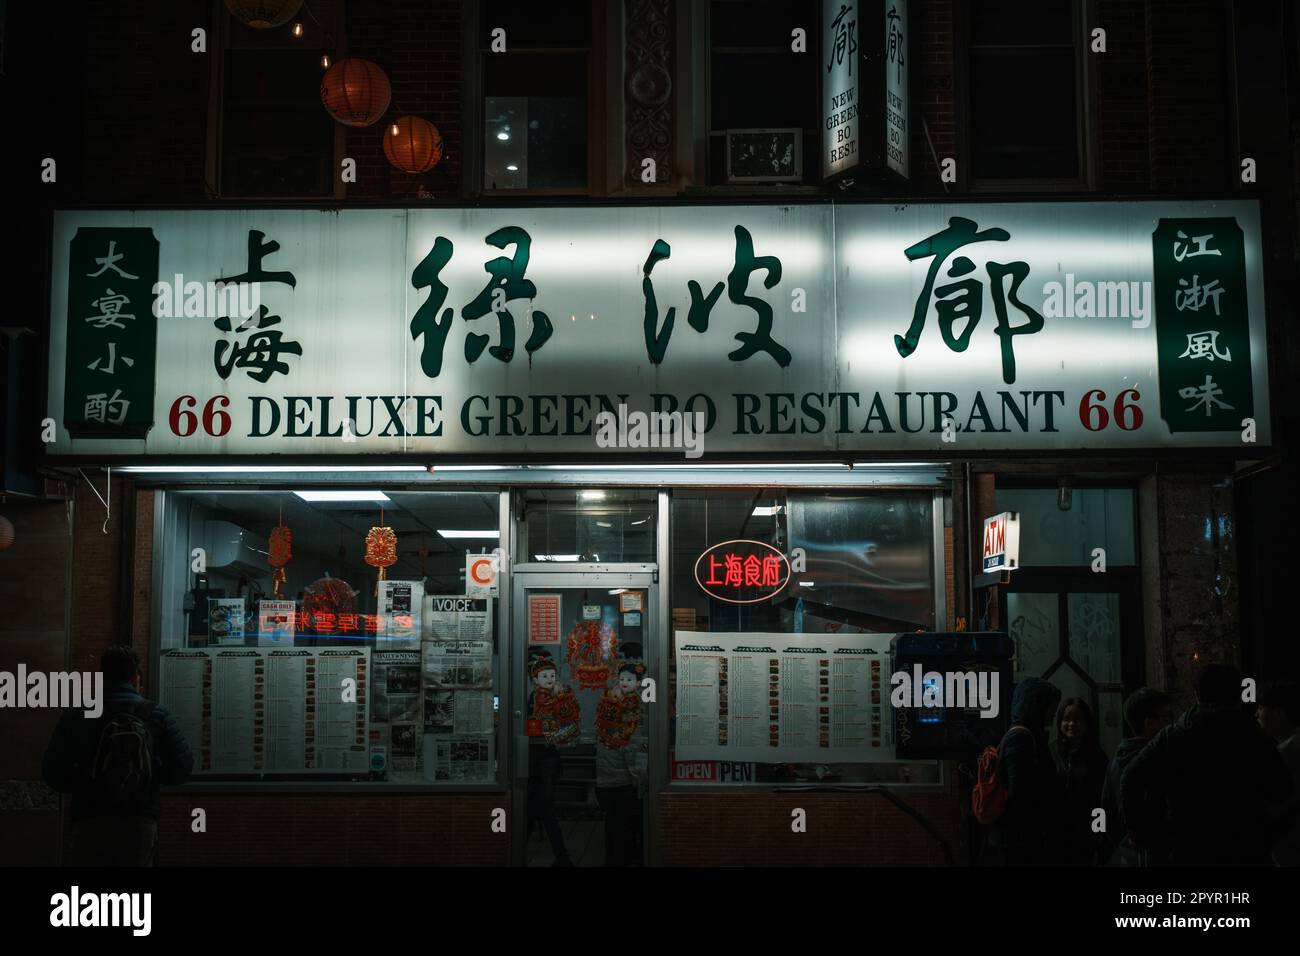 Deluxe Green Bo restaurant at night in Chinatown, Manhattan, New York Stock Photo